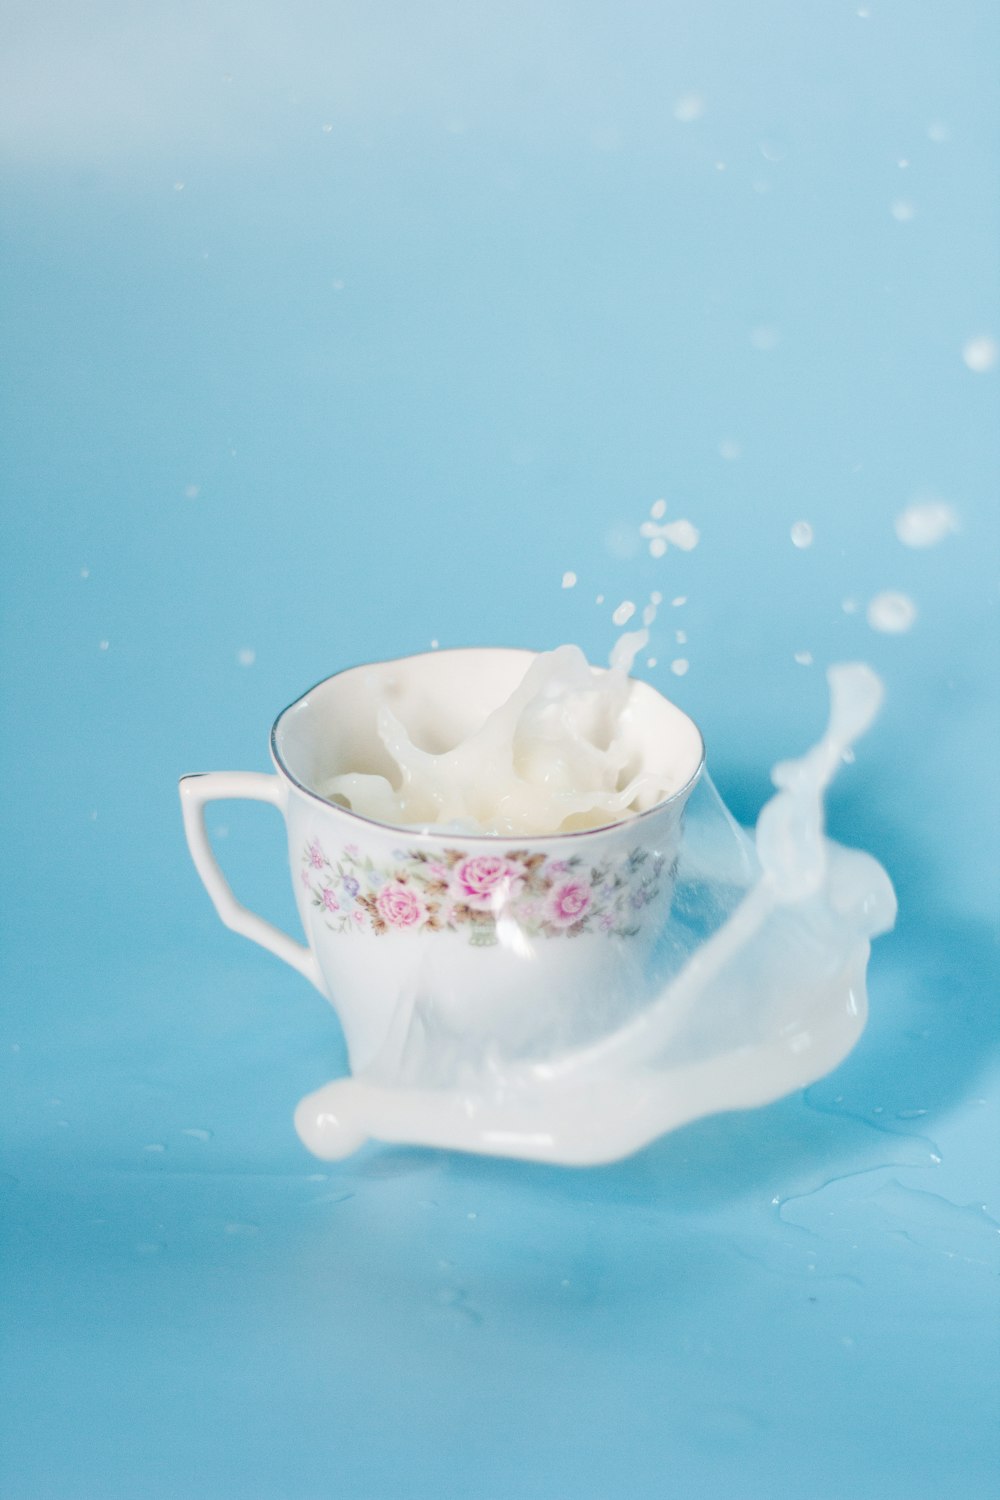 엎질러진 우유가 담긴 흰색과 분홍색 꽃무늬 세라믹 컵